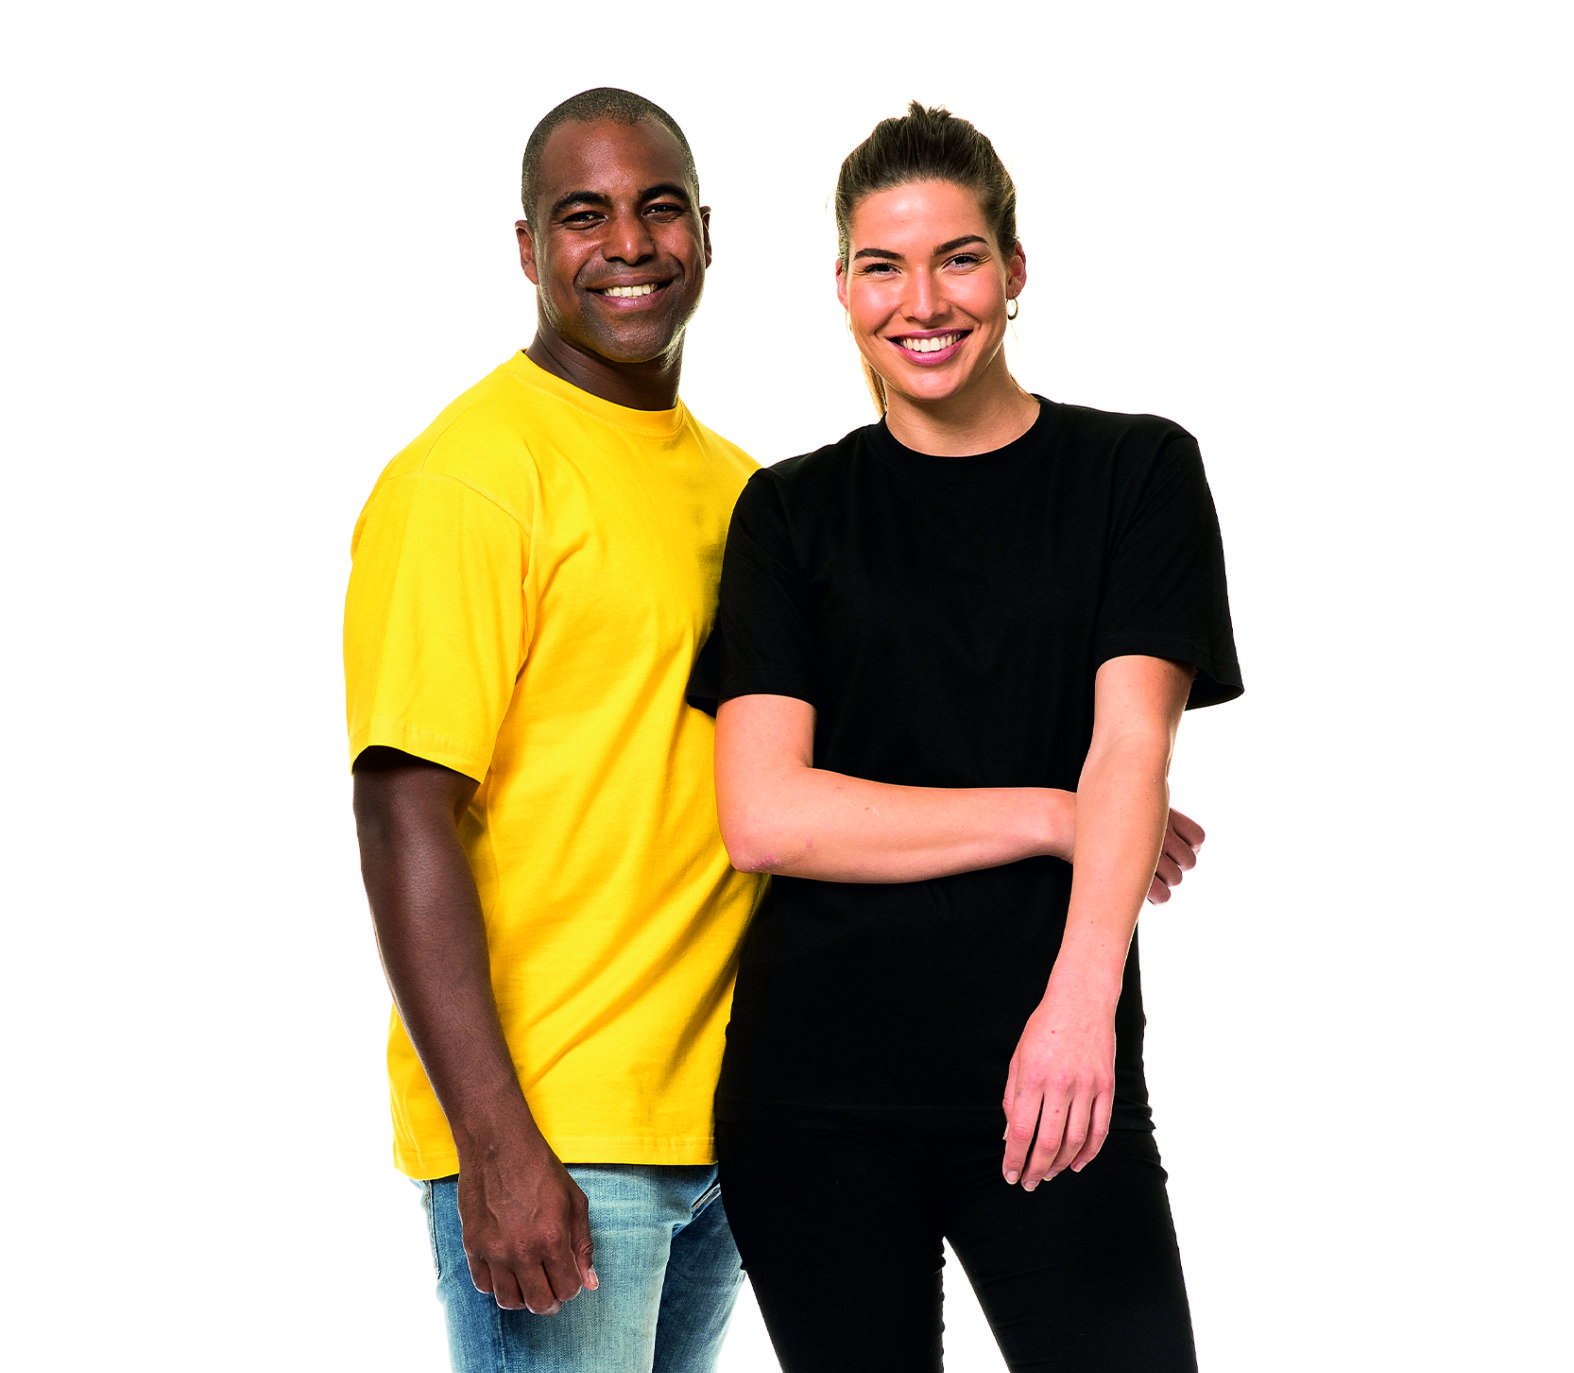 OUTzeit T-Shirt, Bio-Baumwolle, Größen XS-6XL in 31 Farben, inkl. Wunschdruck 